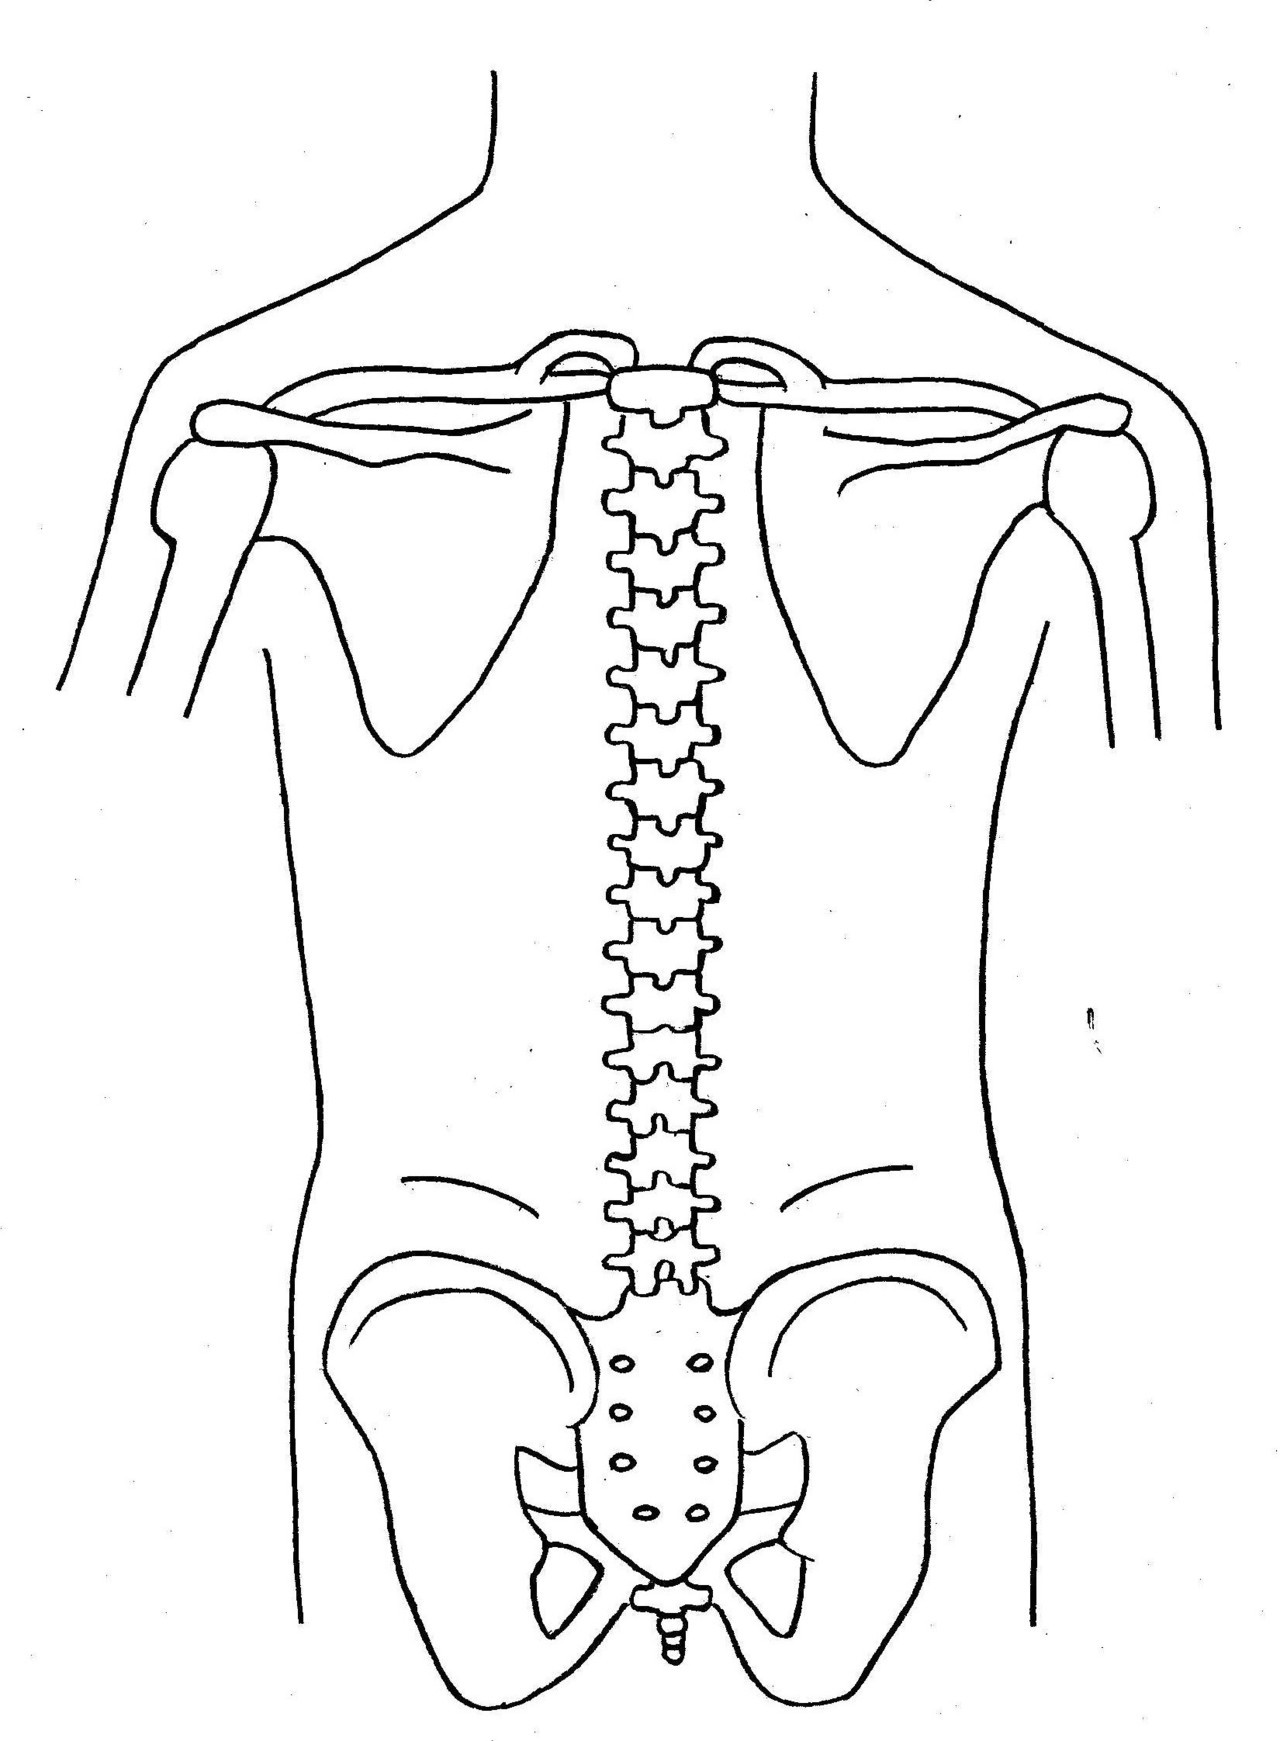 背骨の椎骨と関節